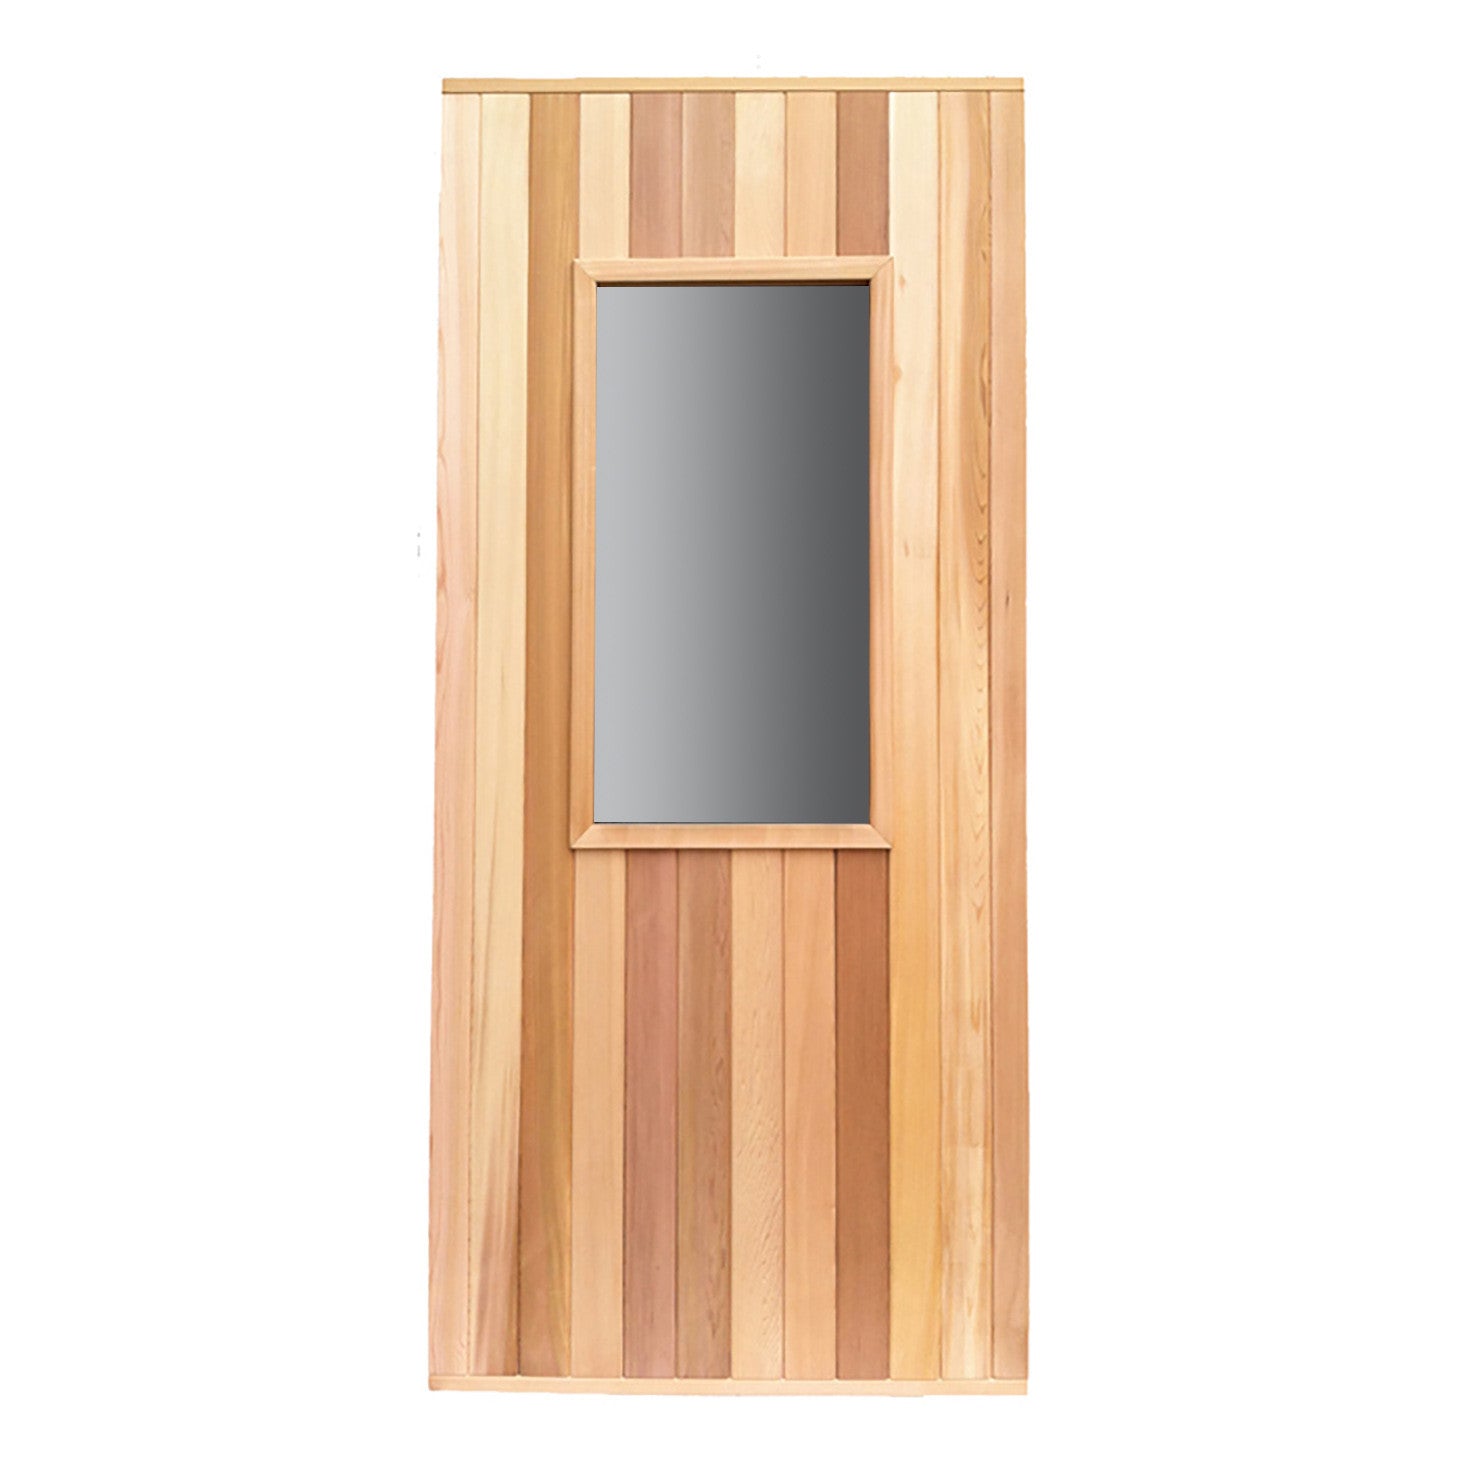 Commercial Cedar Door With Window